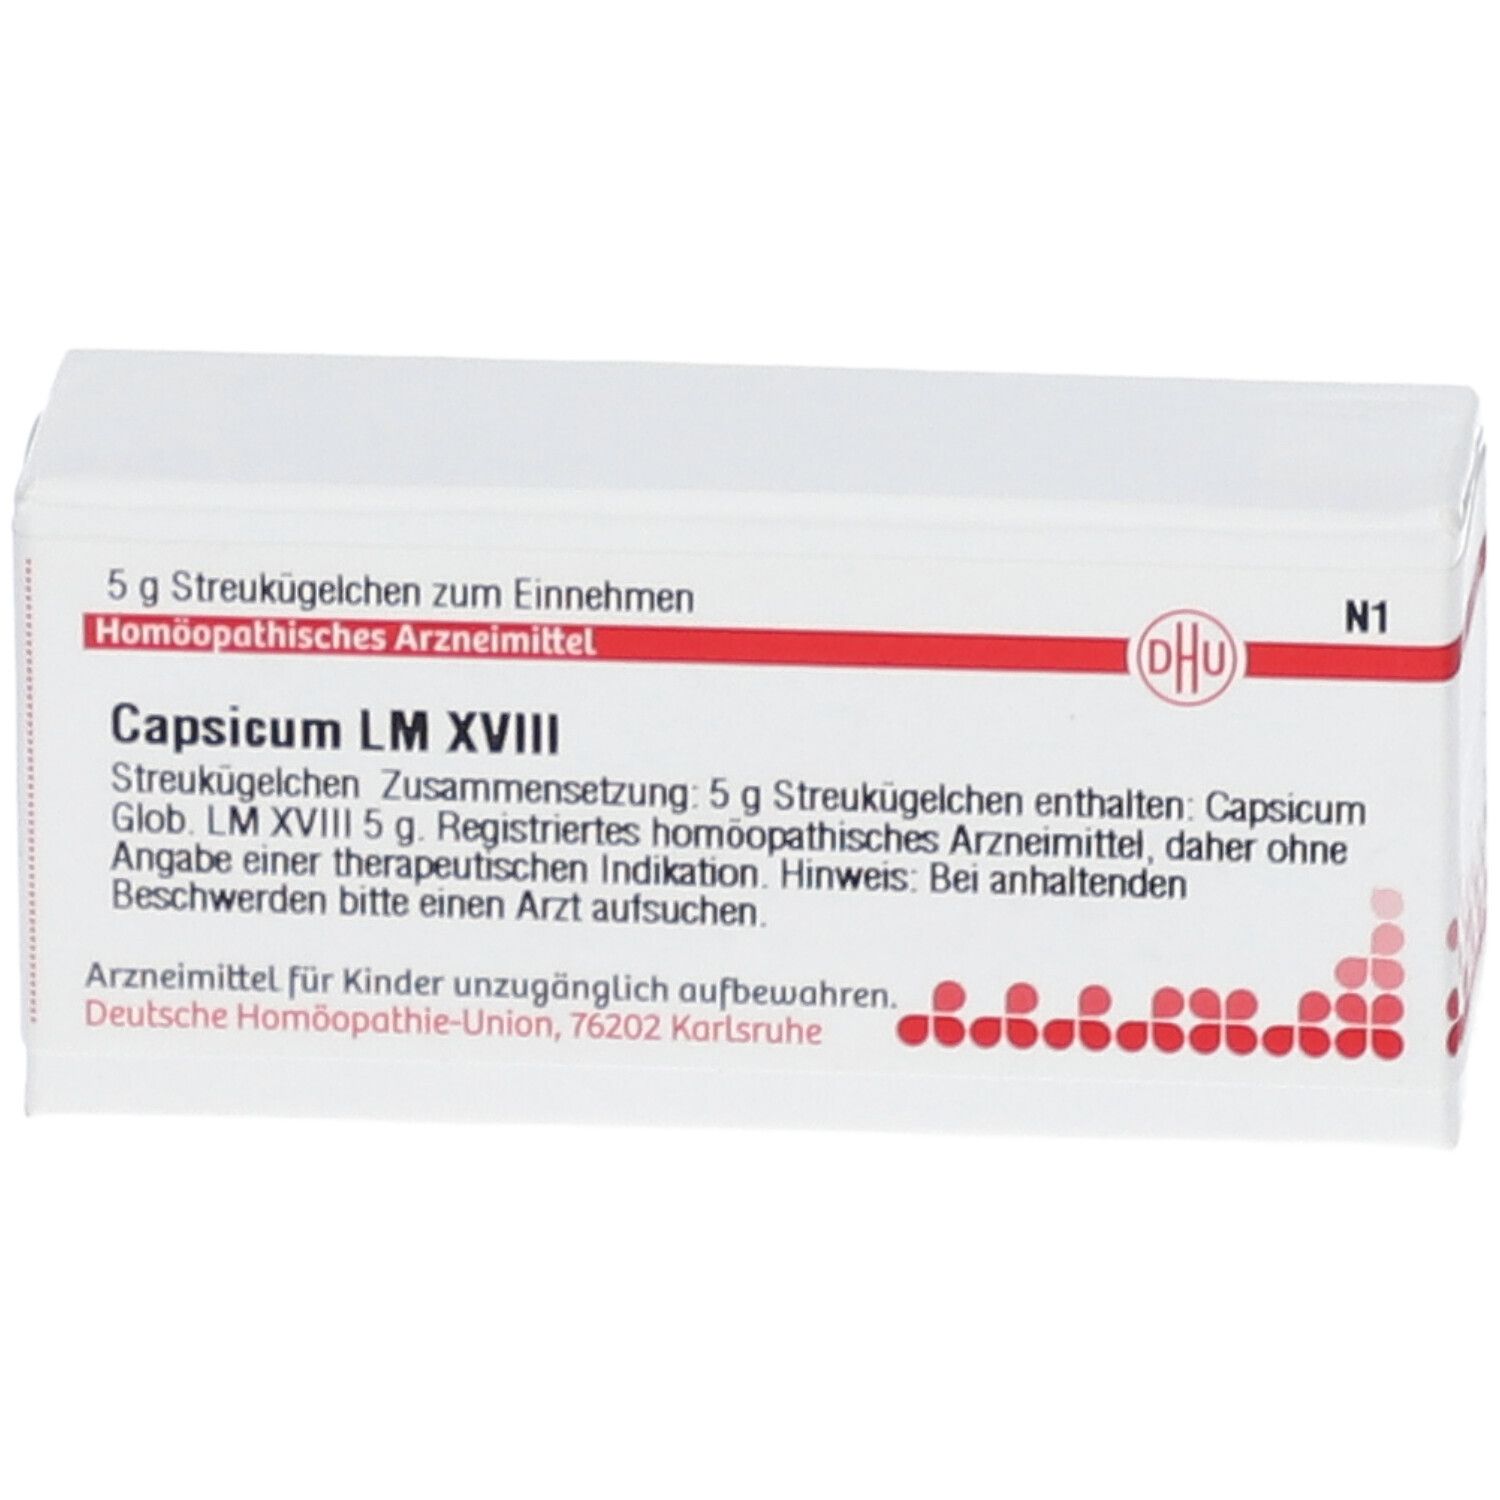 DHU Capsicum LM XVIII